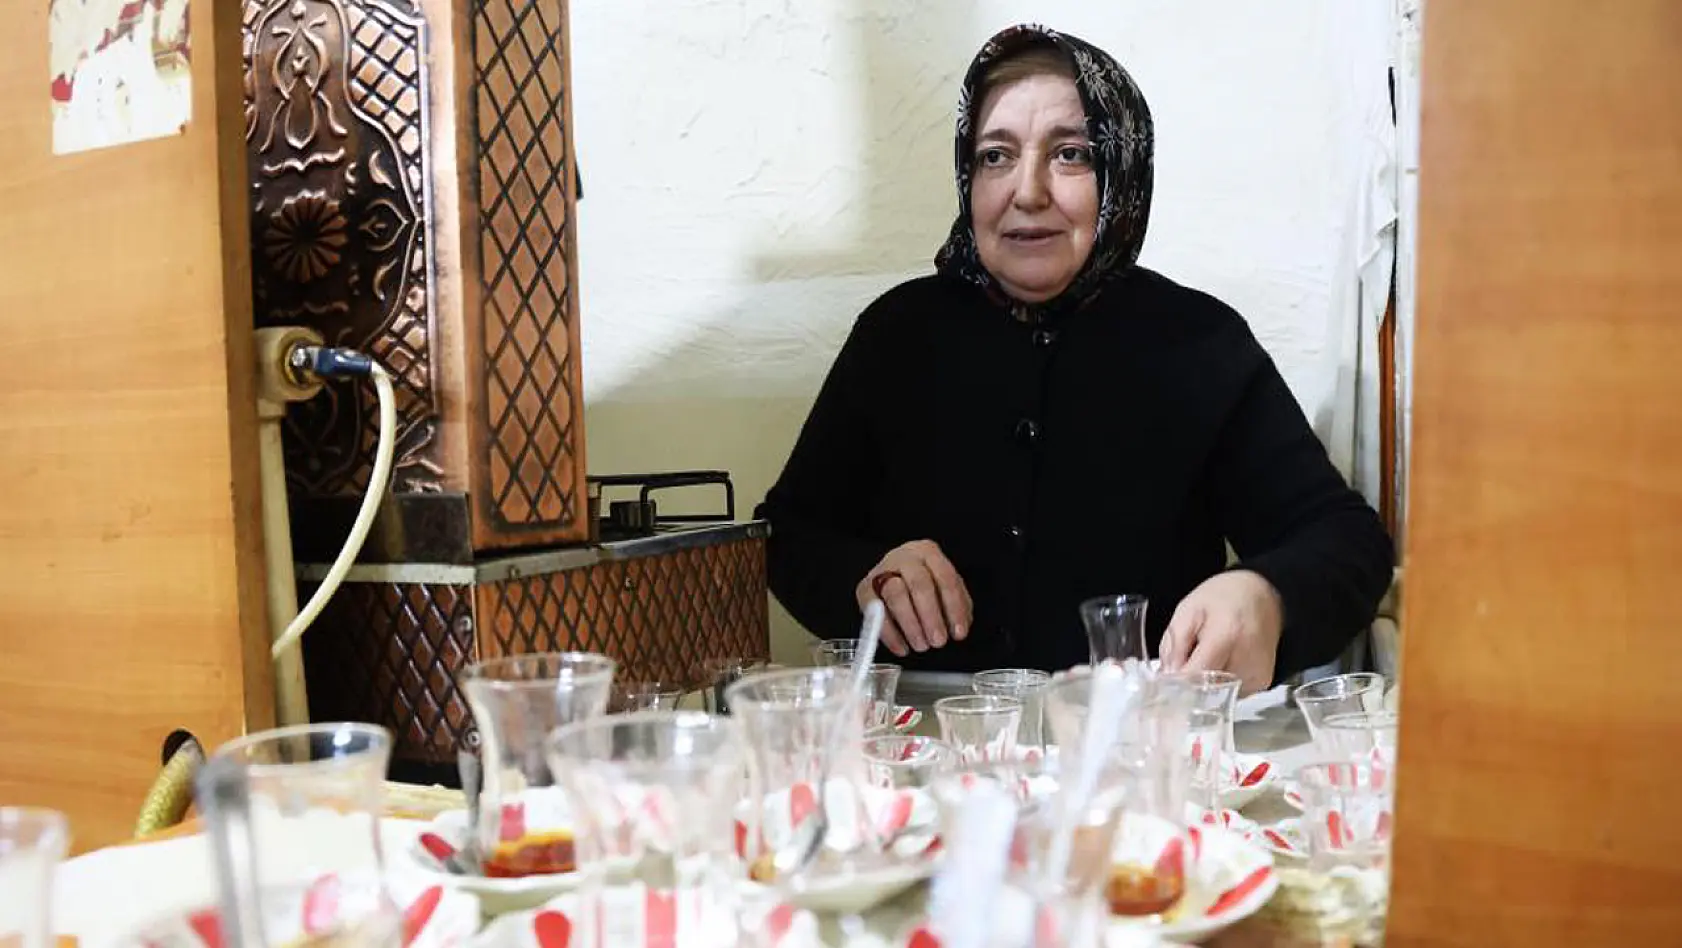 Elazığ'da 64 Yaşındaki Kadının Görenleri Gururlandıran Hikayesi